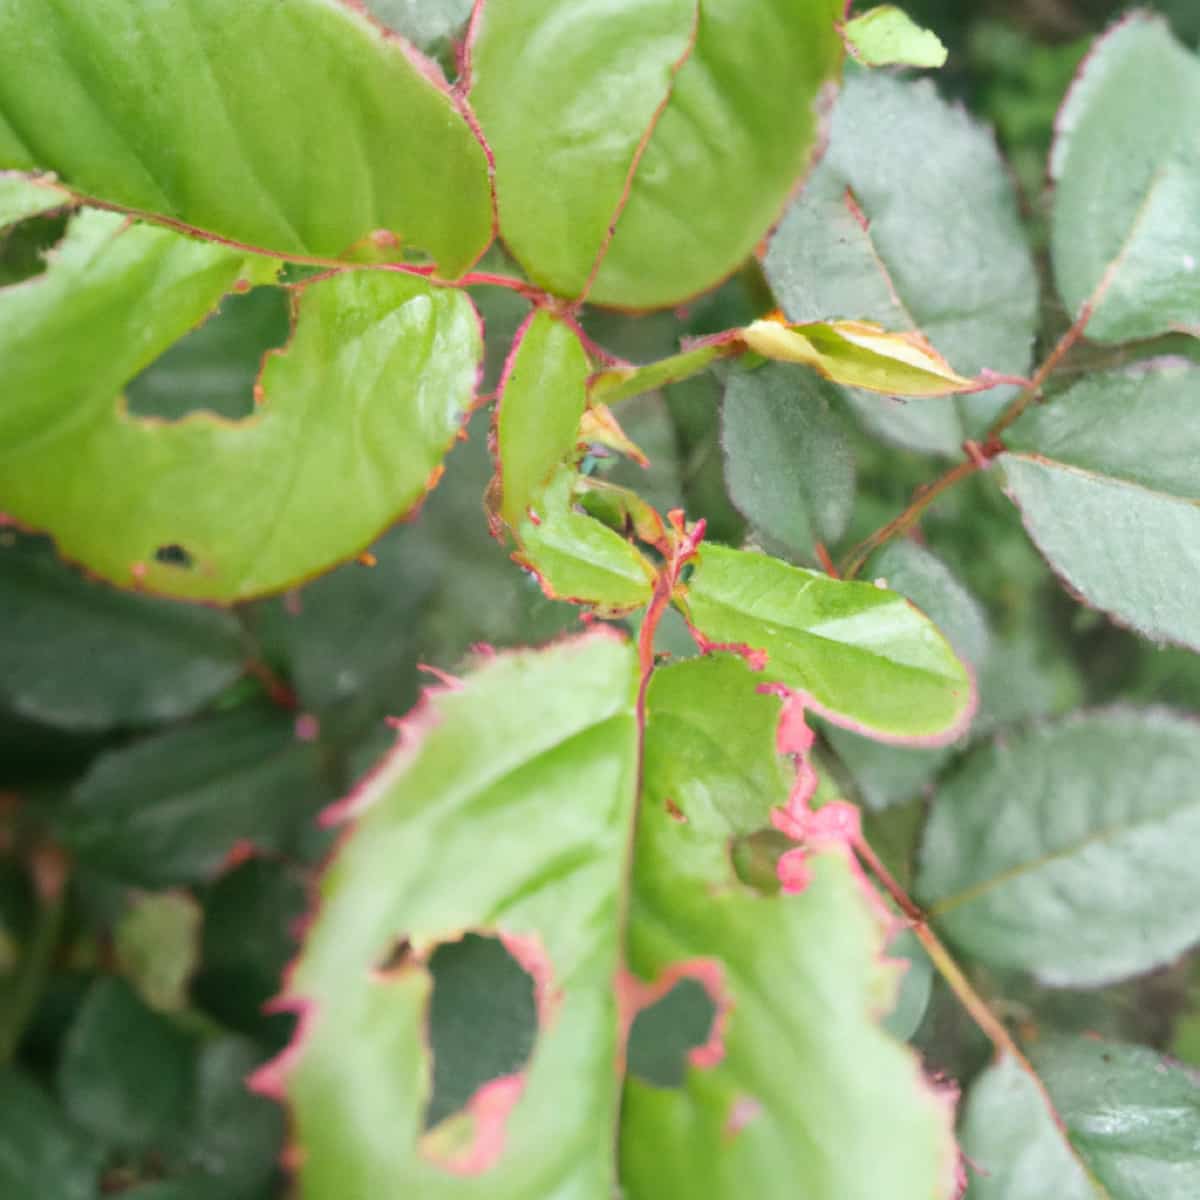 Rose Leaf Disease